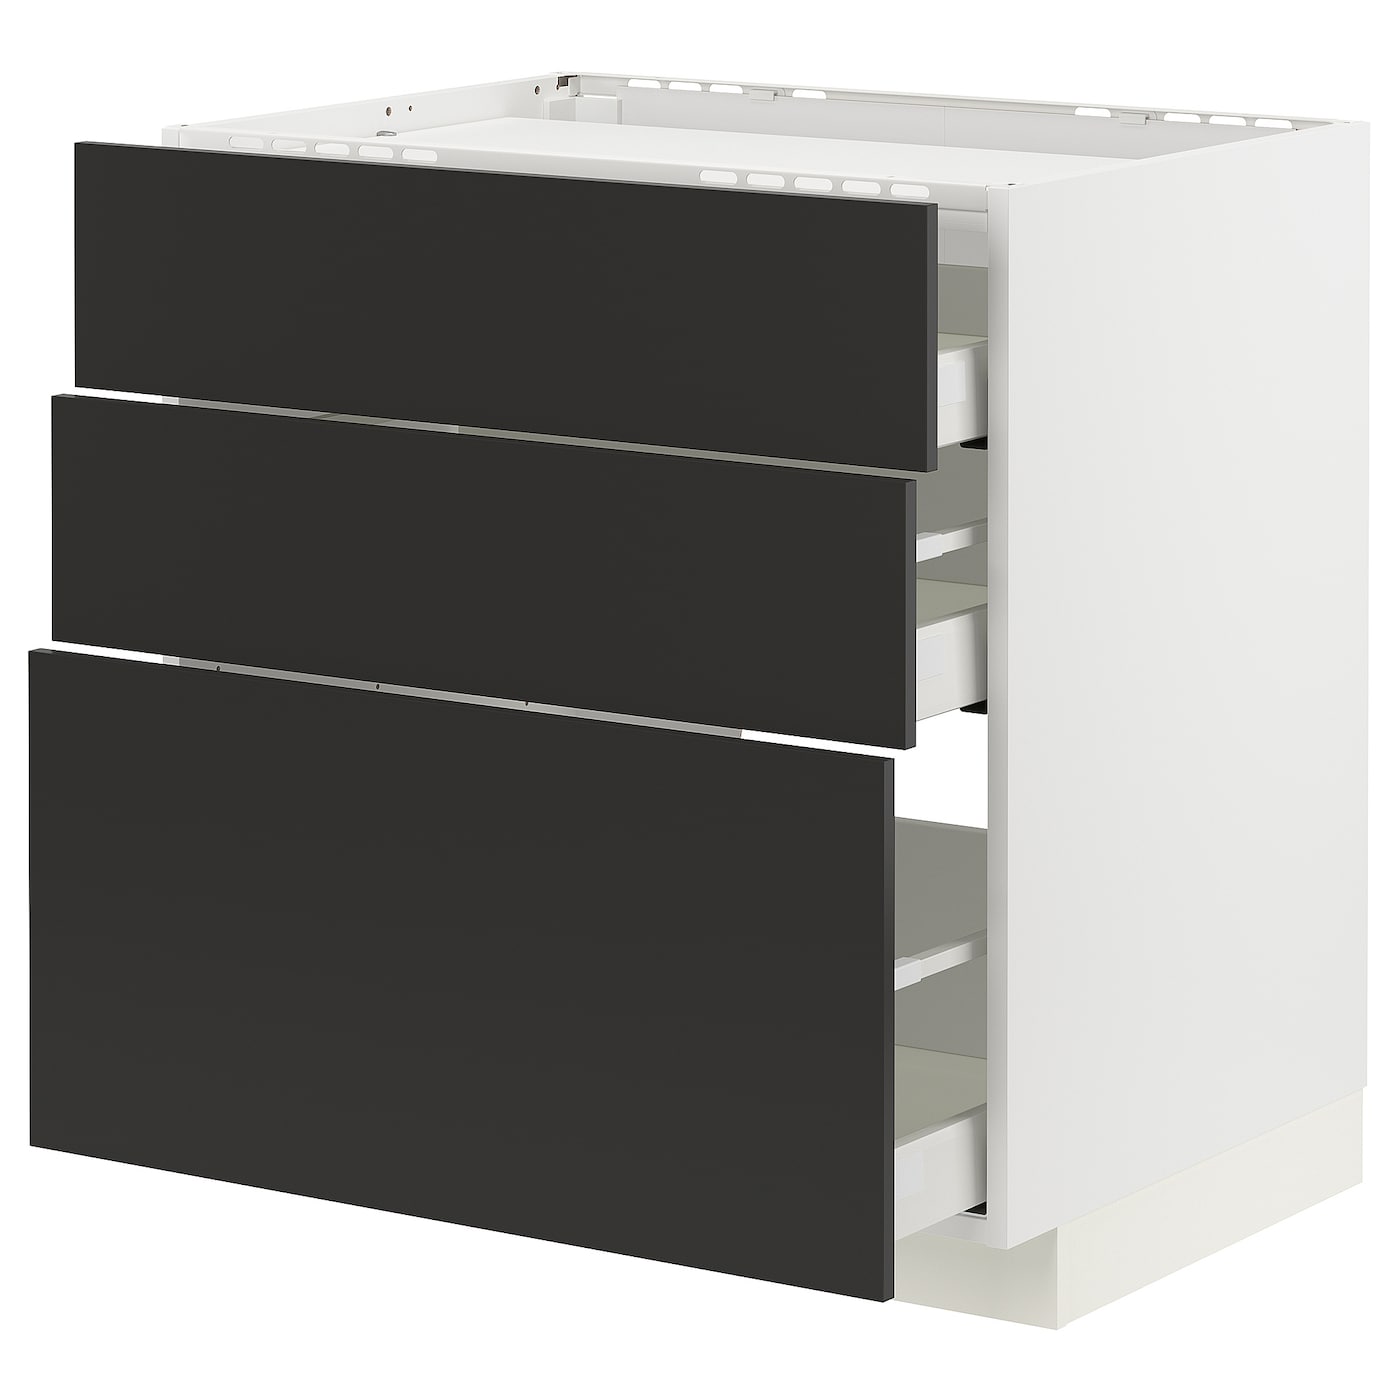 Напольный кухонный шкаф  - IKEA METOD MAXIMERA, 88x61,6x80см, белый/черный, МЕТОД МАКСИМЕРА ИКЕА